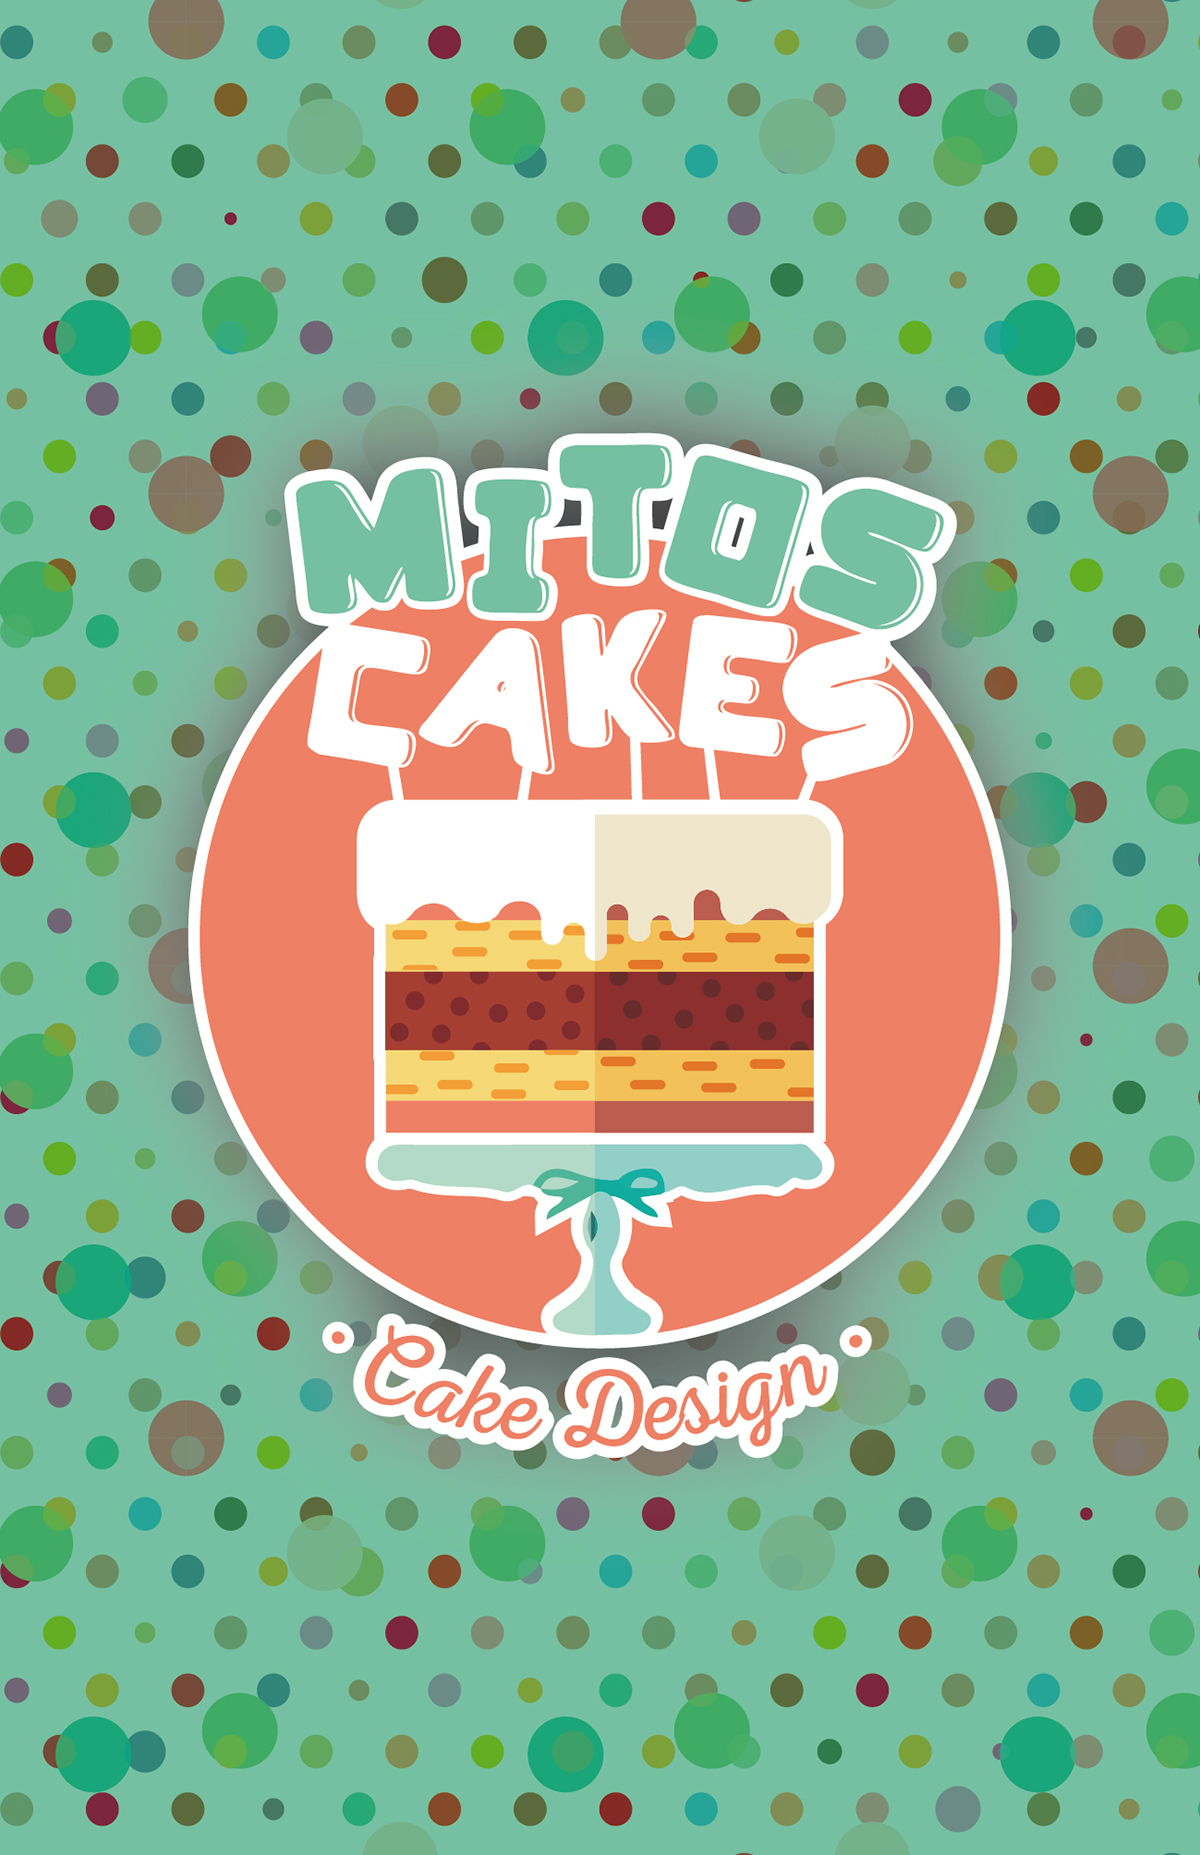 Cake Design Branding